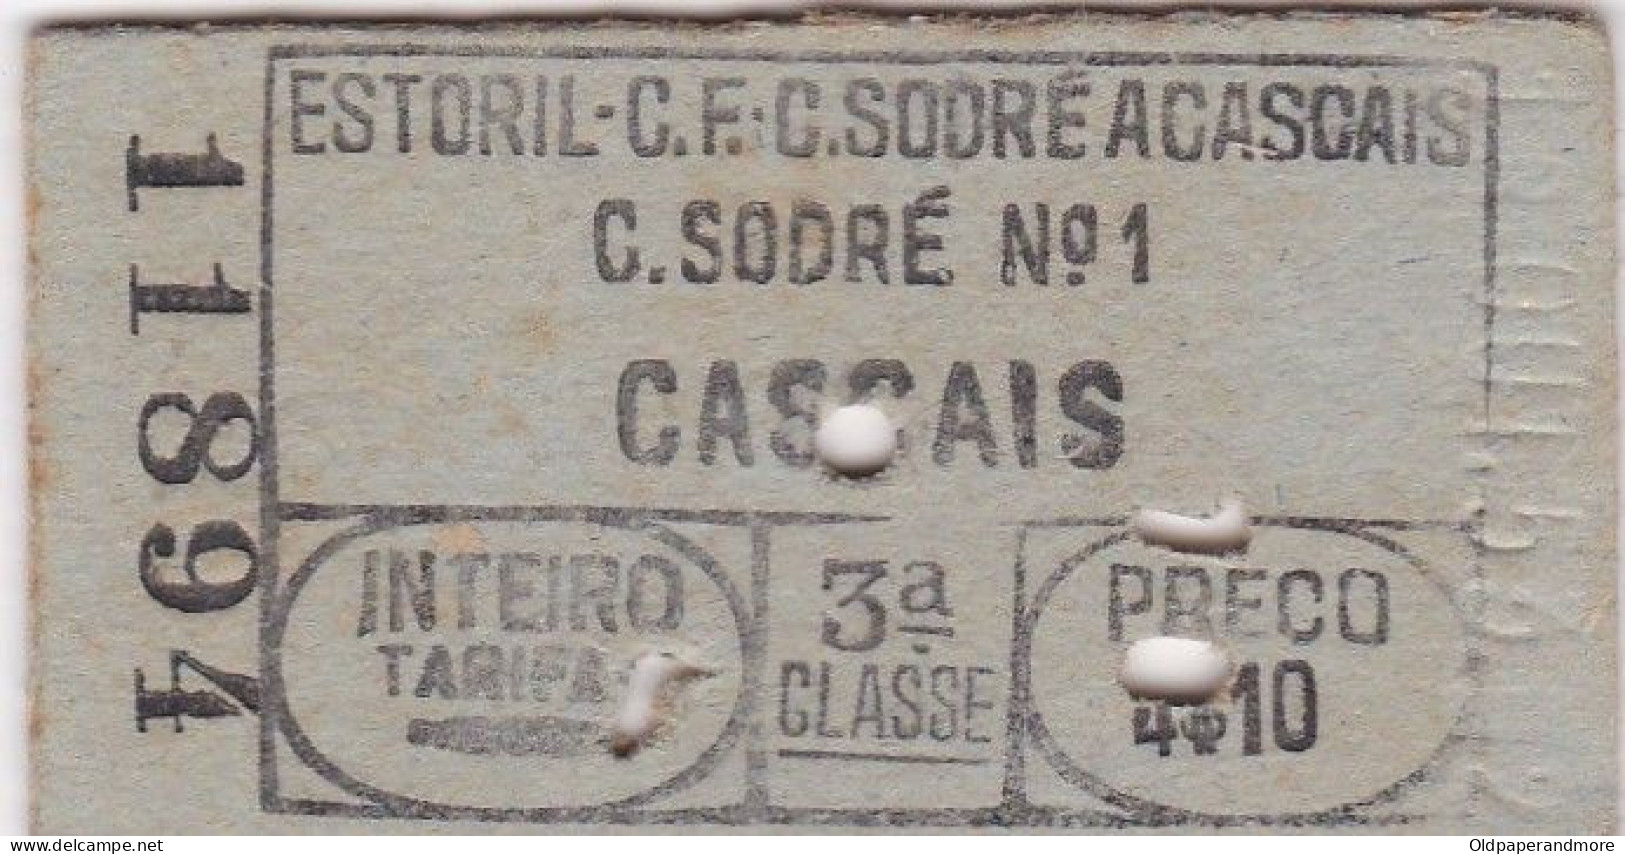 PORTUGAL RAILWAY TICKET TRAIN -  C. SODRÉ  Nº1 / CASCAIS - Europe